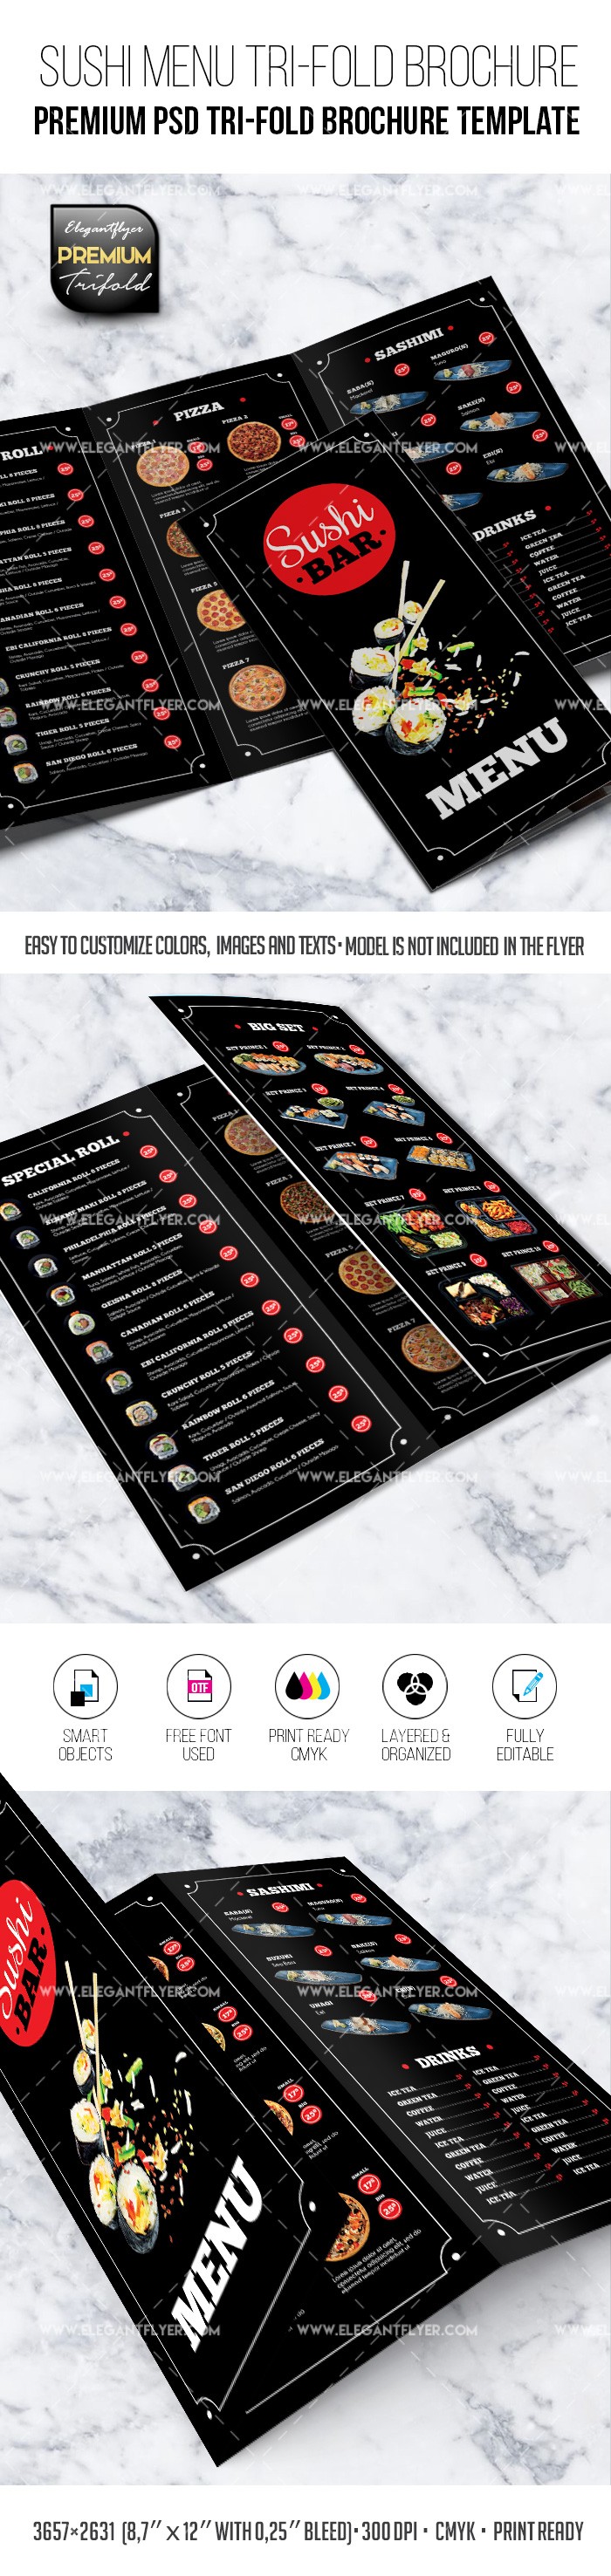 Menu do restaurante de sushi - Modelo de folheto em PSD premium em formato de três dobras. by ElegantFlyer